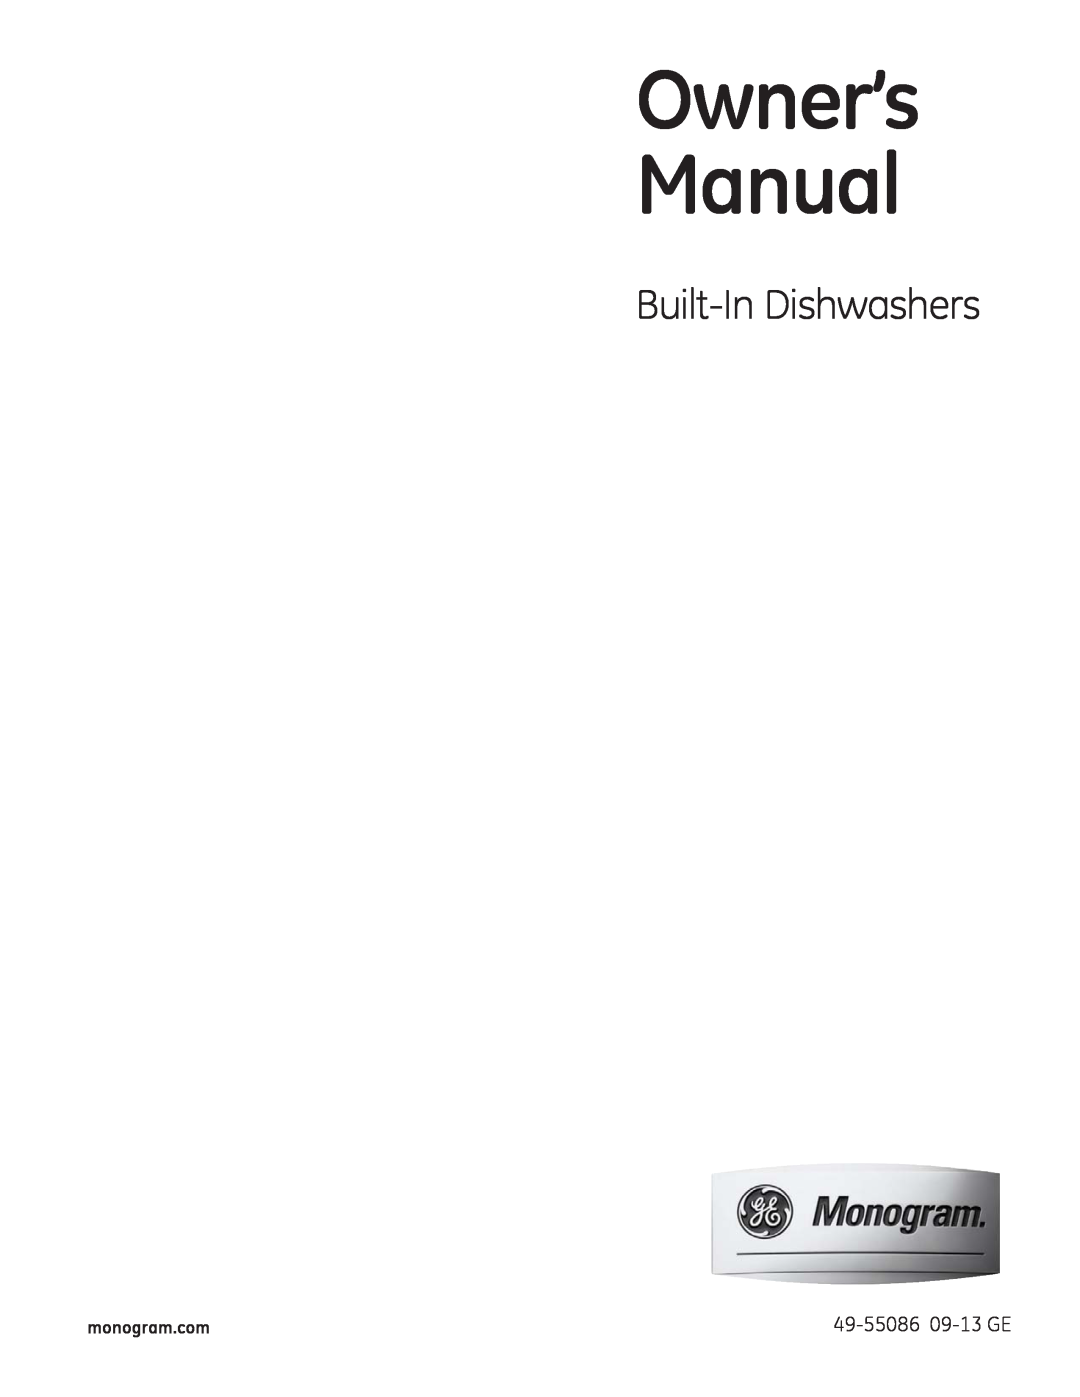 GE Monogram owner manual Built-In Dishwashers, 49-55086 09-13 GE, monogram.com 